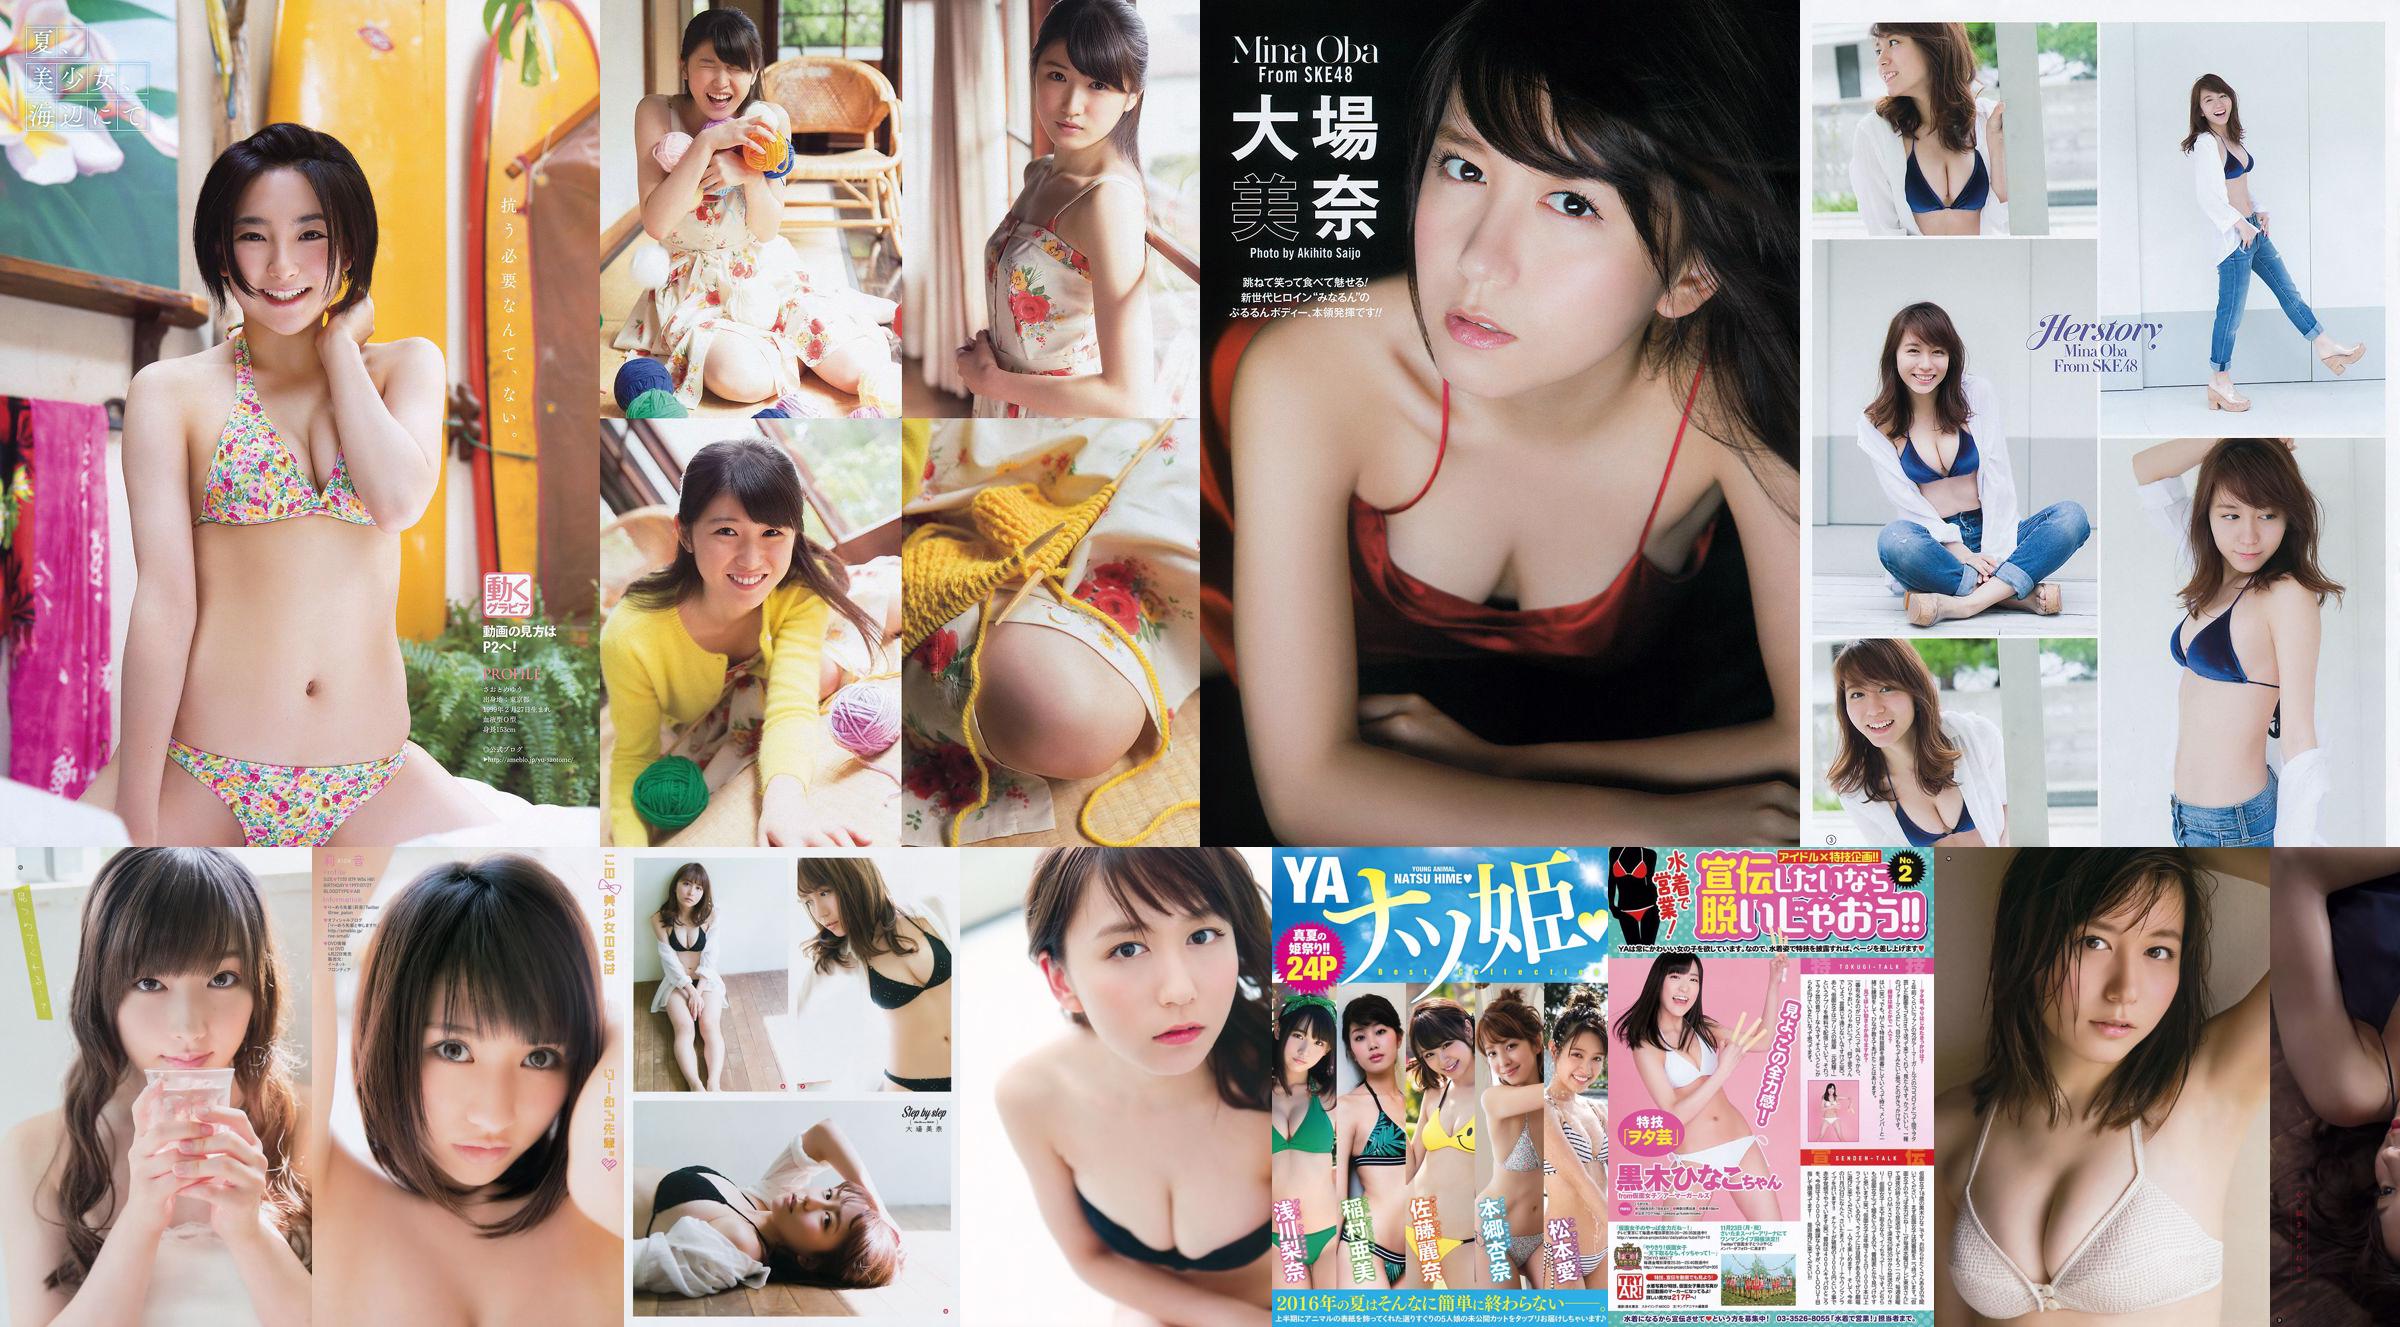 [Young Gangan] Mina Oba Mariya Nagao Rena Sato 2014 No.11 Photograph No.53e453 Page 1